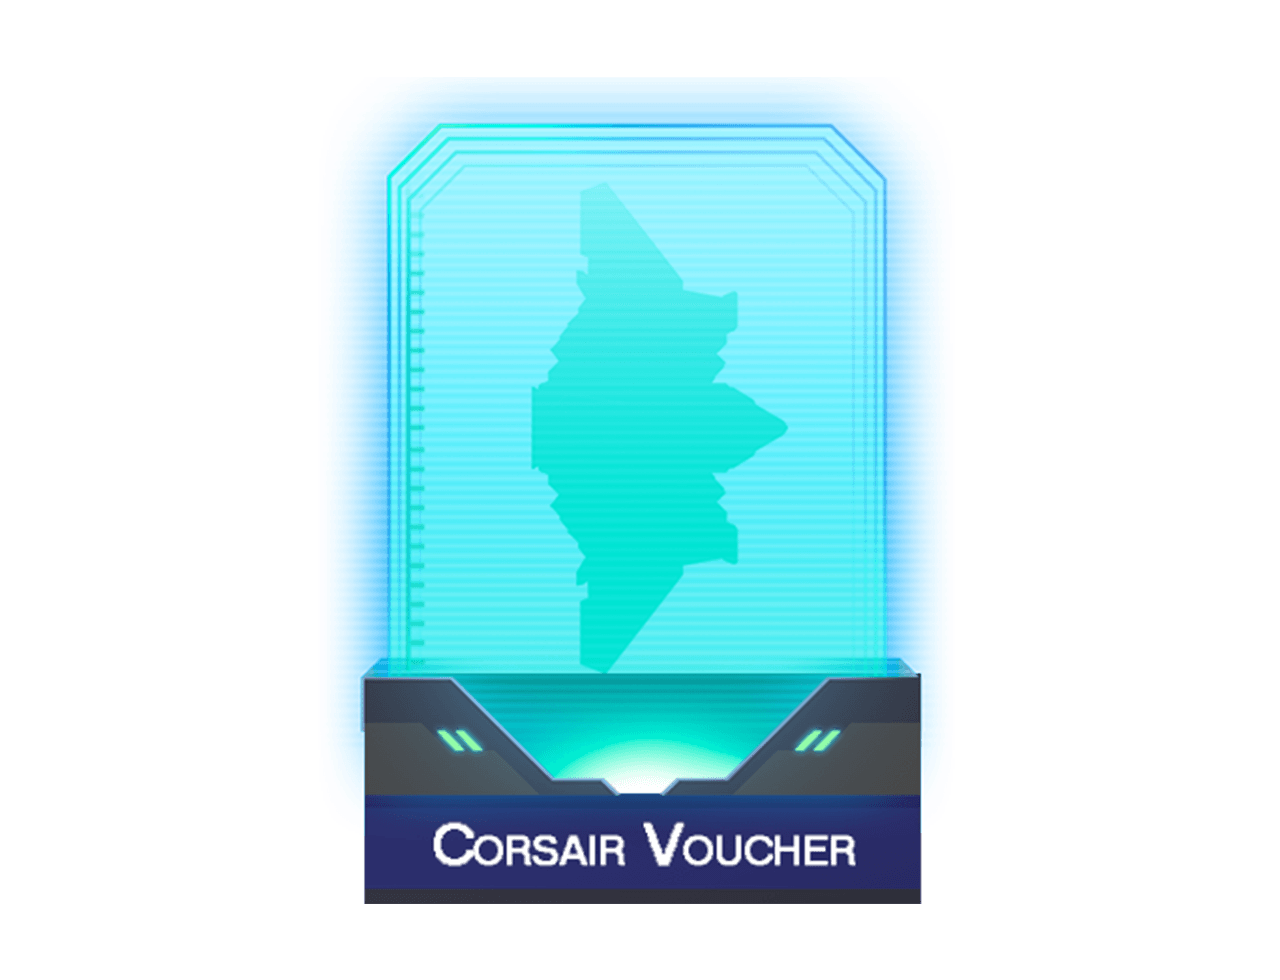 Corsair Voucher ID #4382